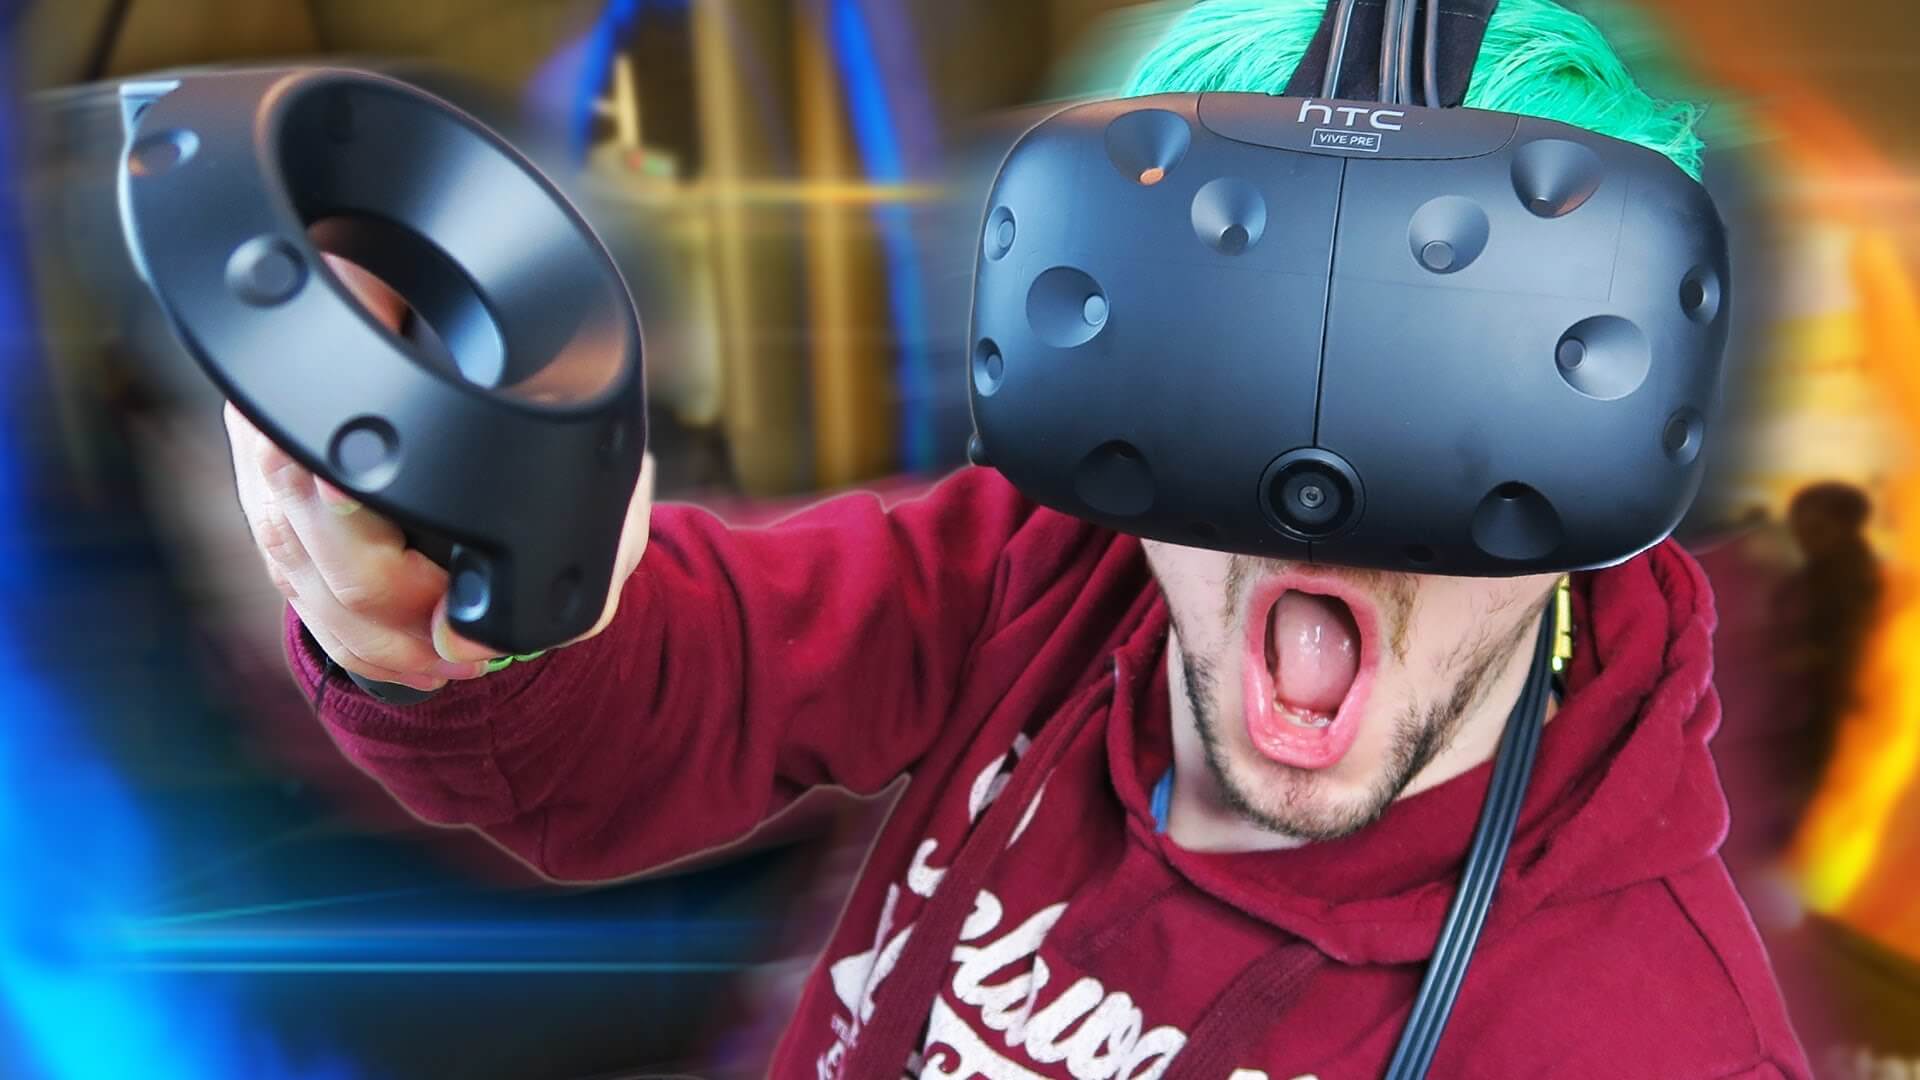 Vr игры в стим. Шлем vr50. VR аттракцион Окулус 2. Шлем виртуальной реальности. Ребенок в шлеме виртуальной реальности.